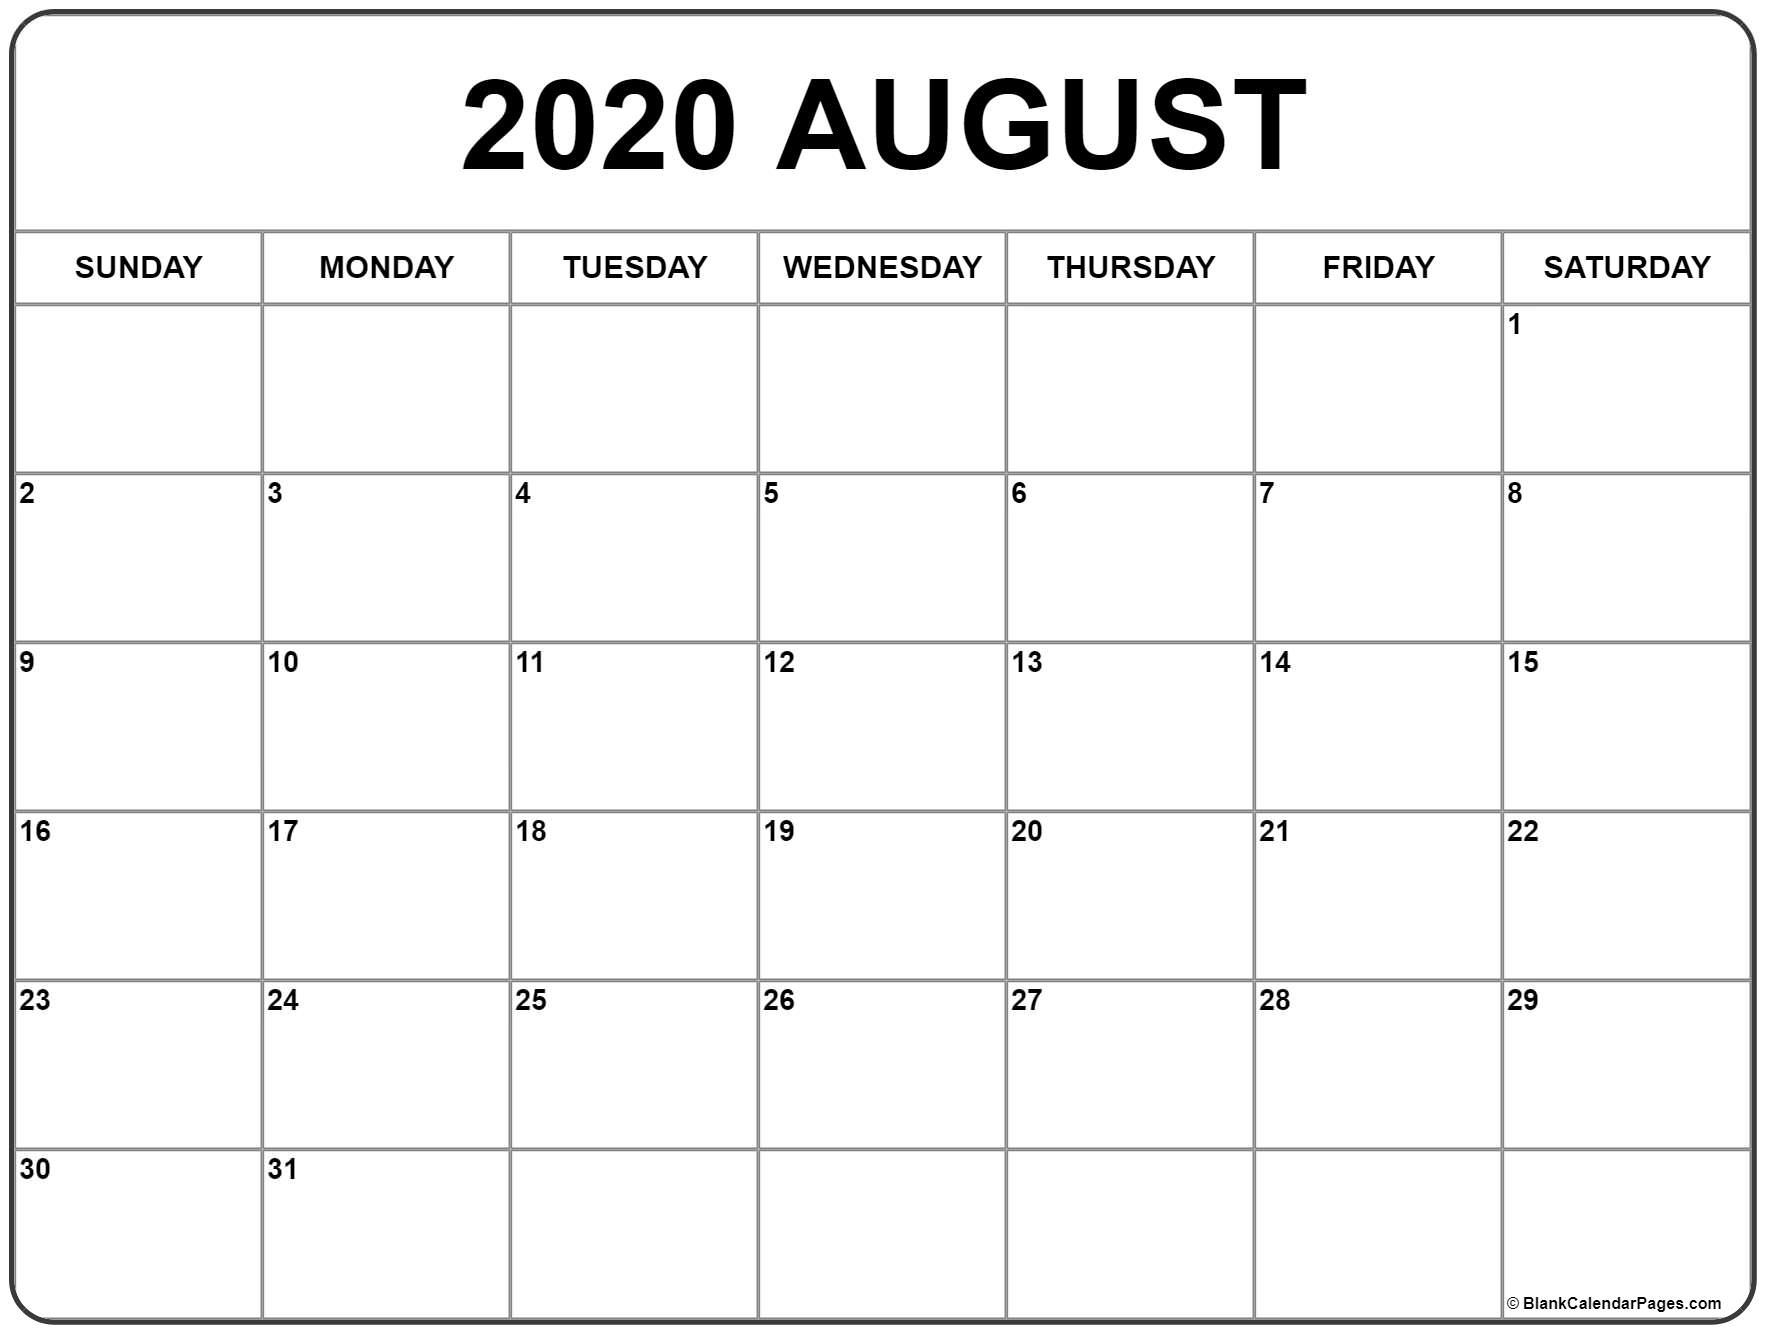 Waterproof Paper August 2021 Calendar Printables